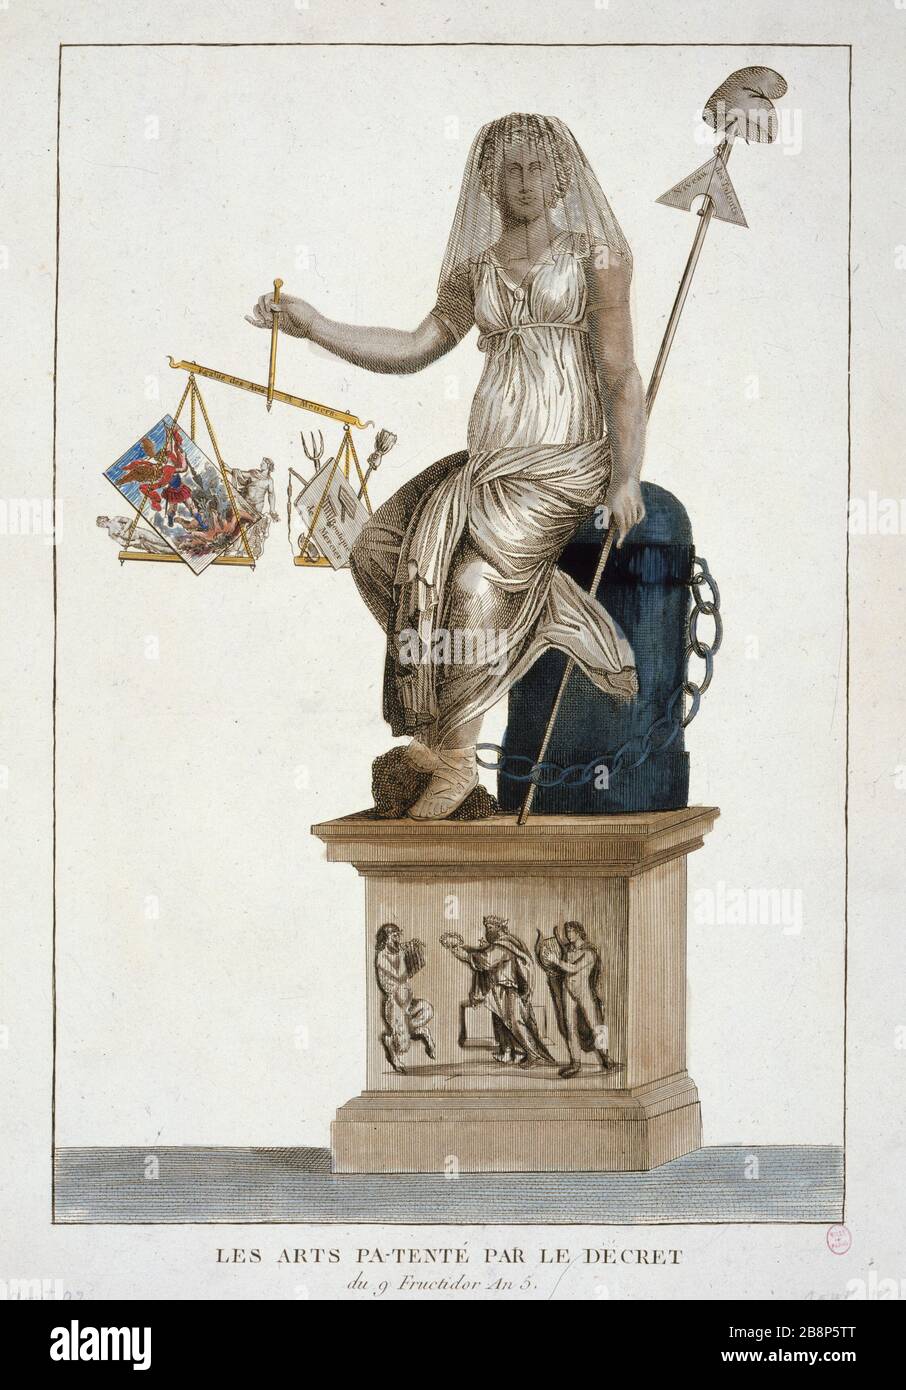 ARTS PA TENT BY DECREE OF 9 FRUCTIDOR YEAR 5 "Les Arts pa-tenté par le décret du 9 Fructidor An 5 (26 août 1797)". Paris, musée Carnavalet. Stock Photo